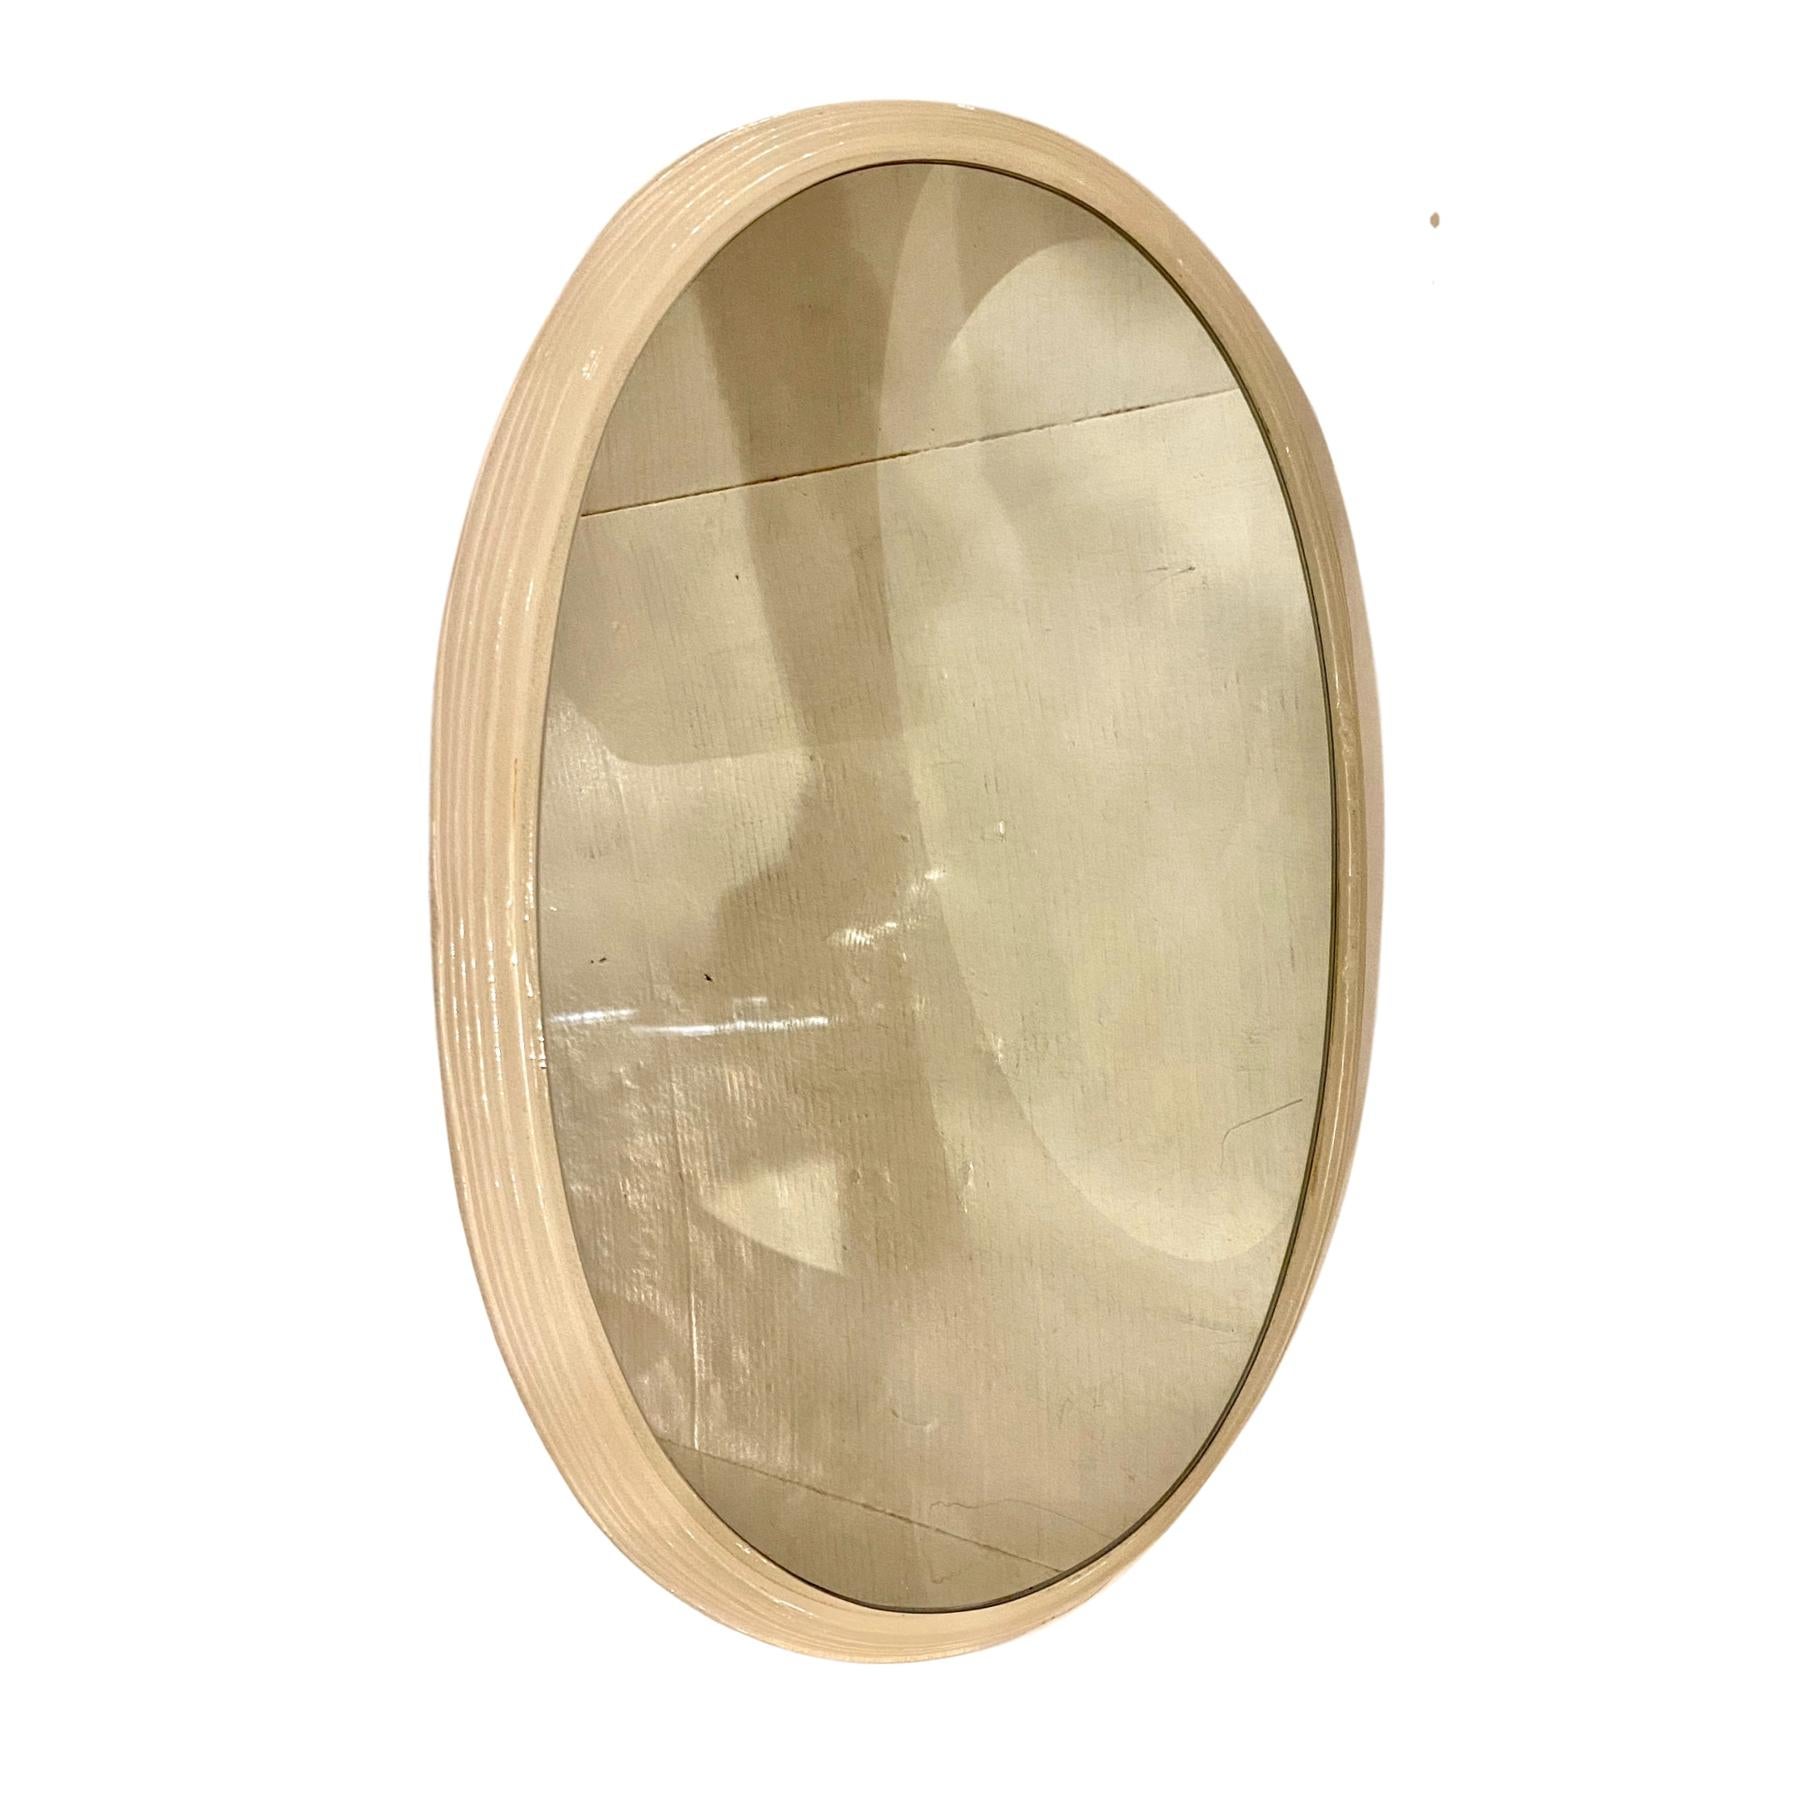 Ein italienischer ovaler Spiegel mit Harzrahmen und Hintergrundbeleuchtung aus den 1960er Jahren.

Abmessungen:
Höhe 24,5